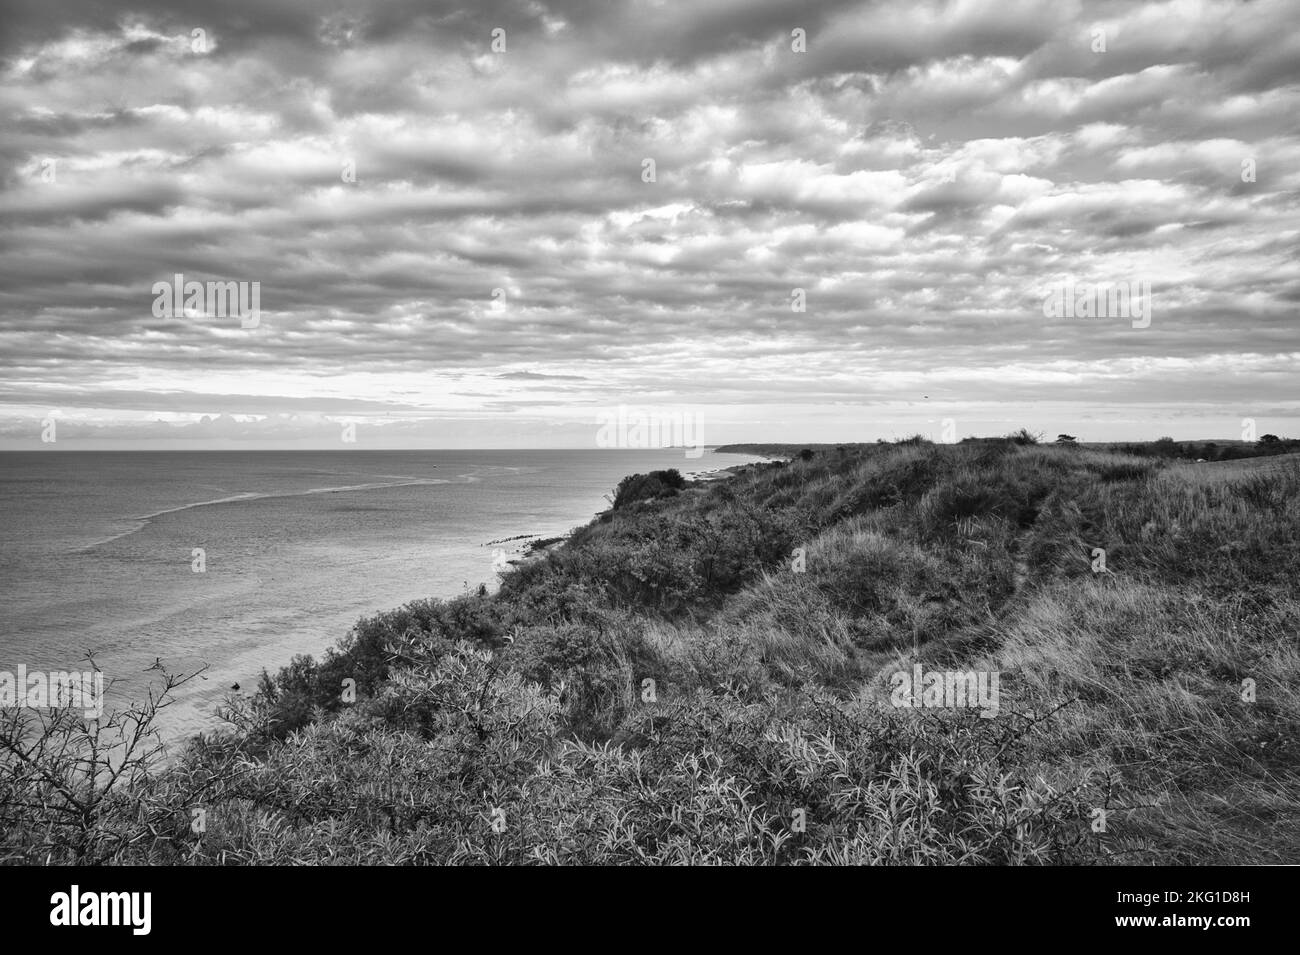 Hundested, Danemark sur la falaise surplombant la mer, prise en noir et blanc. Côte de la mer Baltique, prairie herbacée, plage. Nuages à l'horizon. Pho paysage Banque D'Images